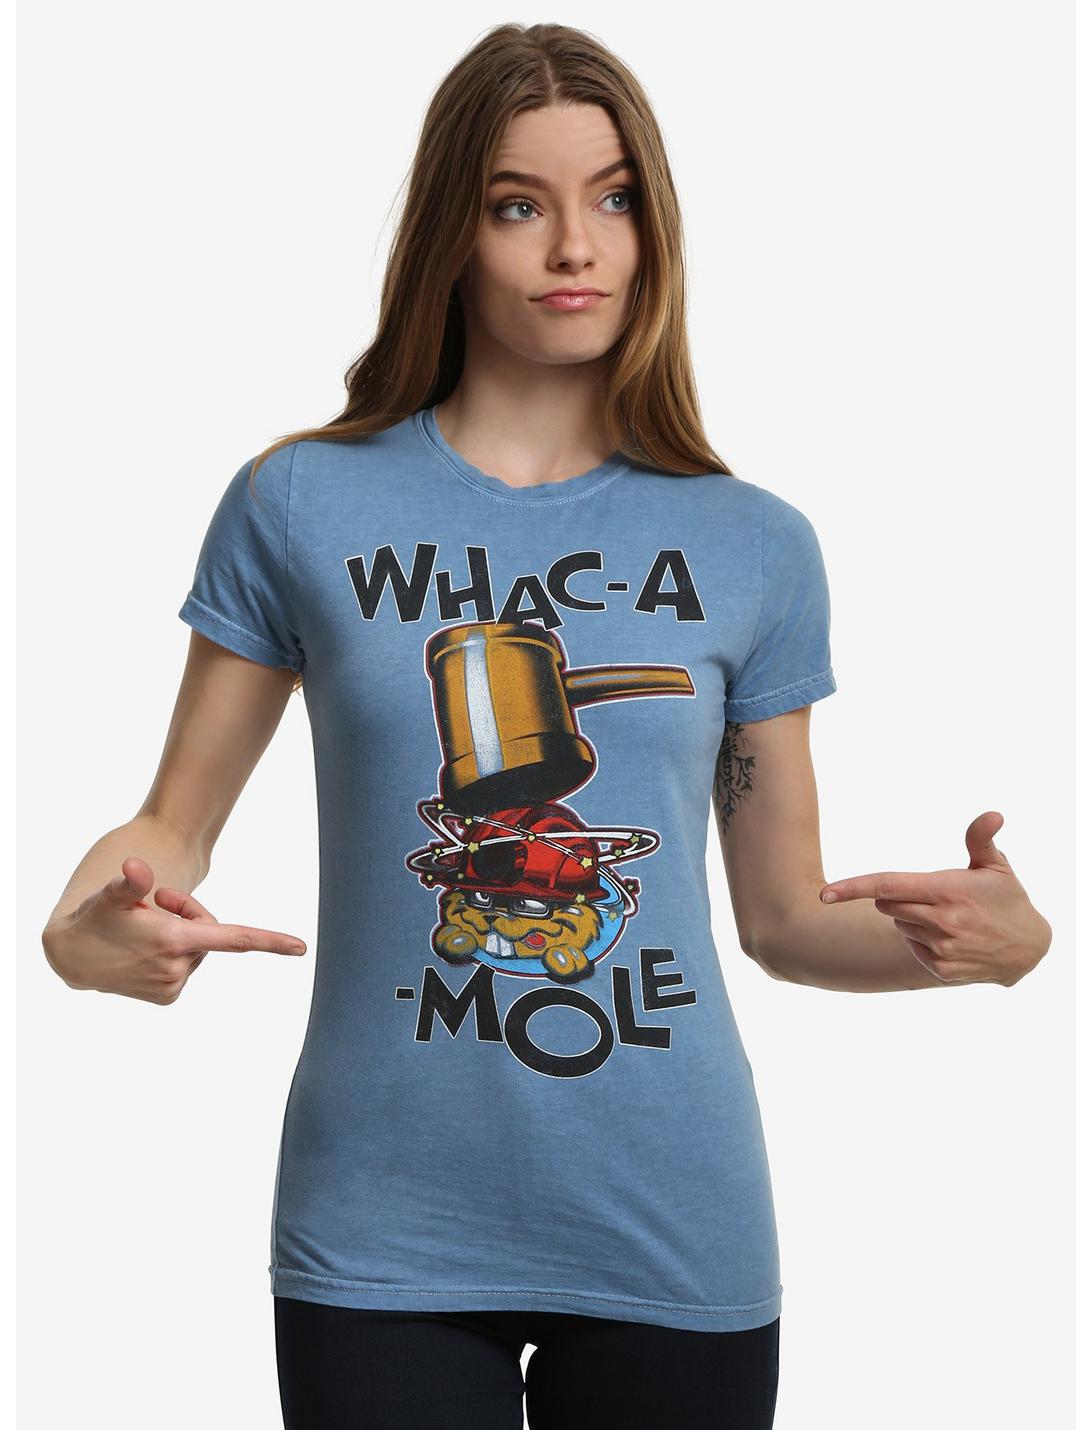 Whac-A-Mole Arcade Game Womens T-Shirt, BLUE, hi-res